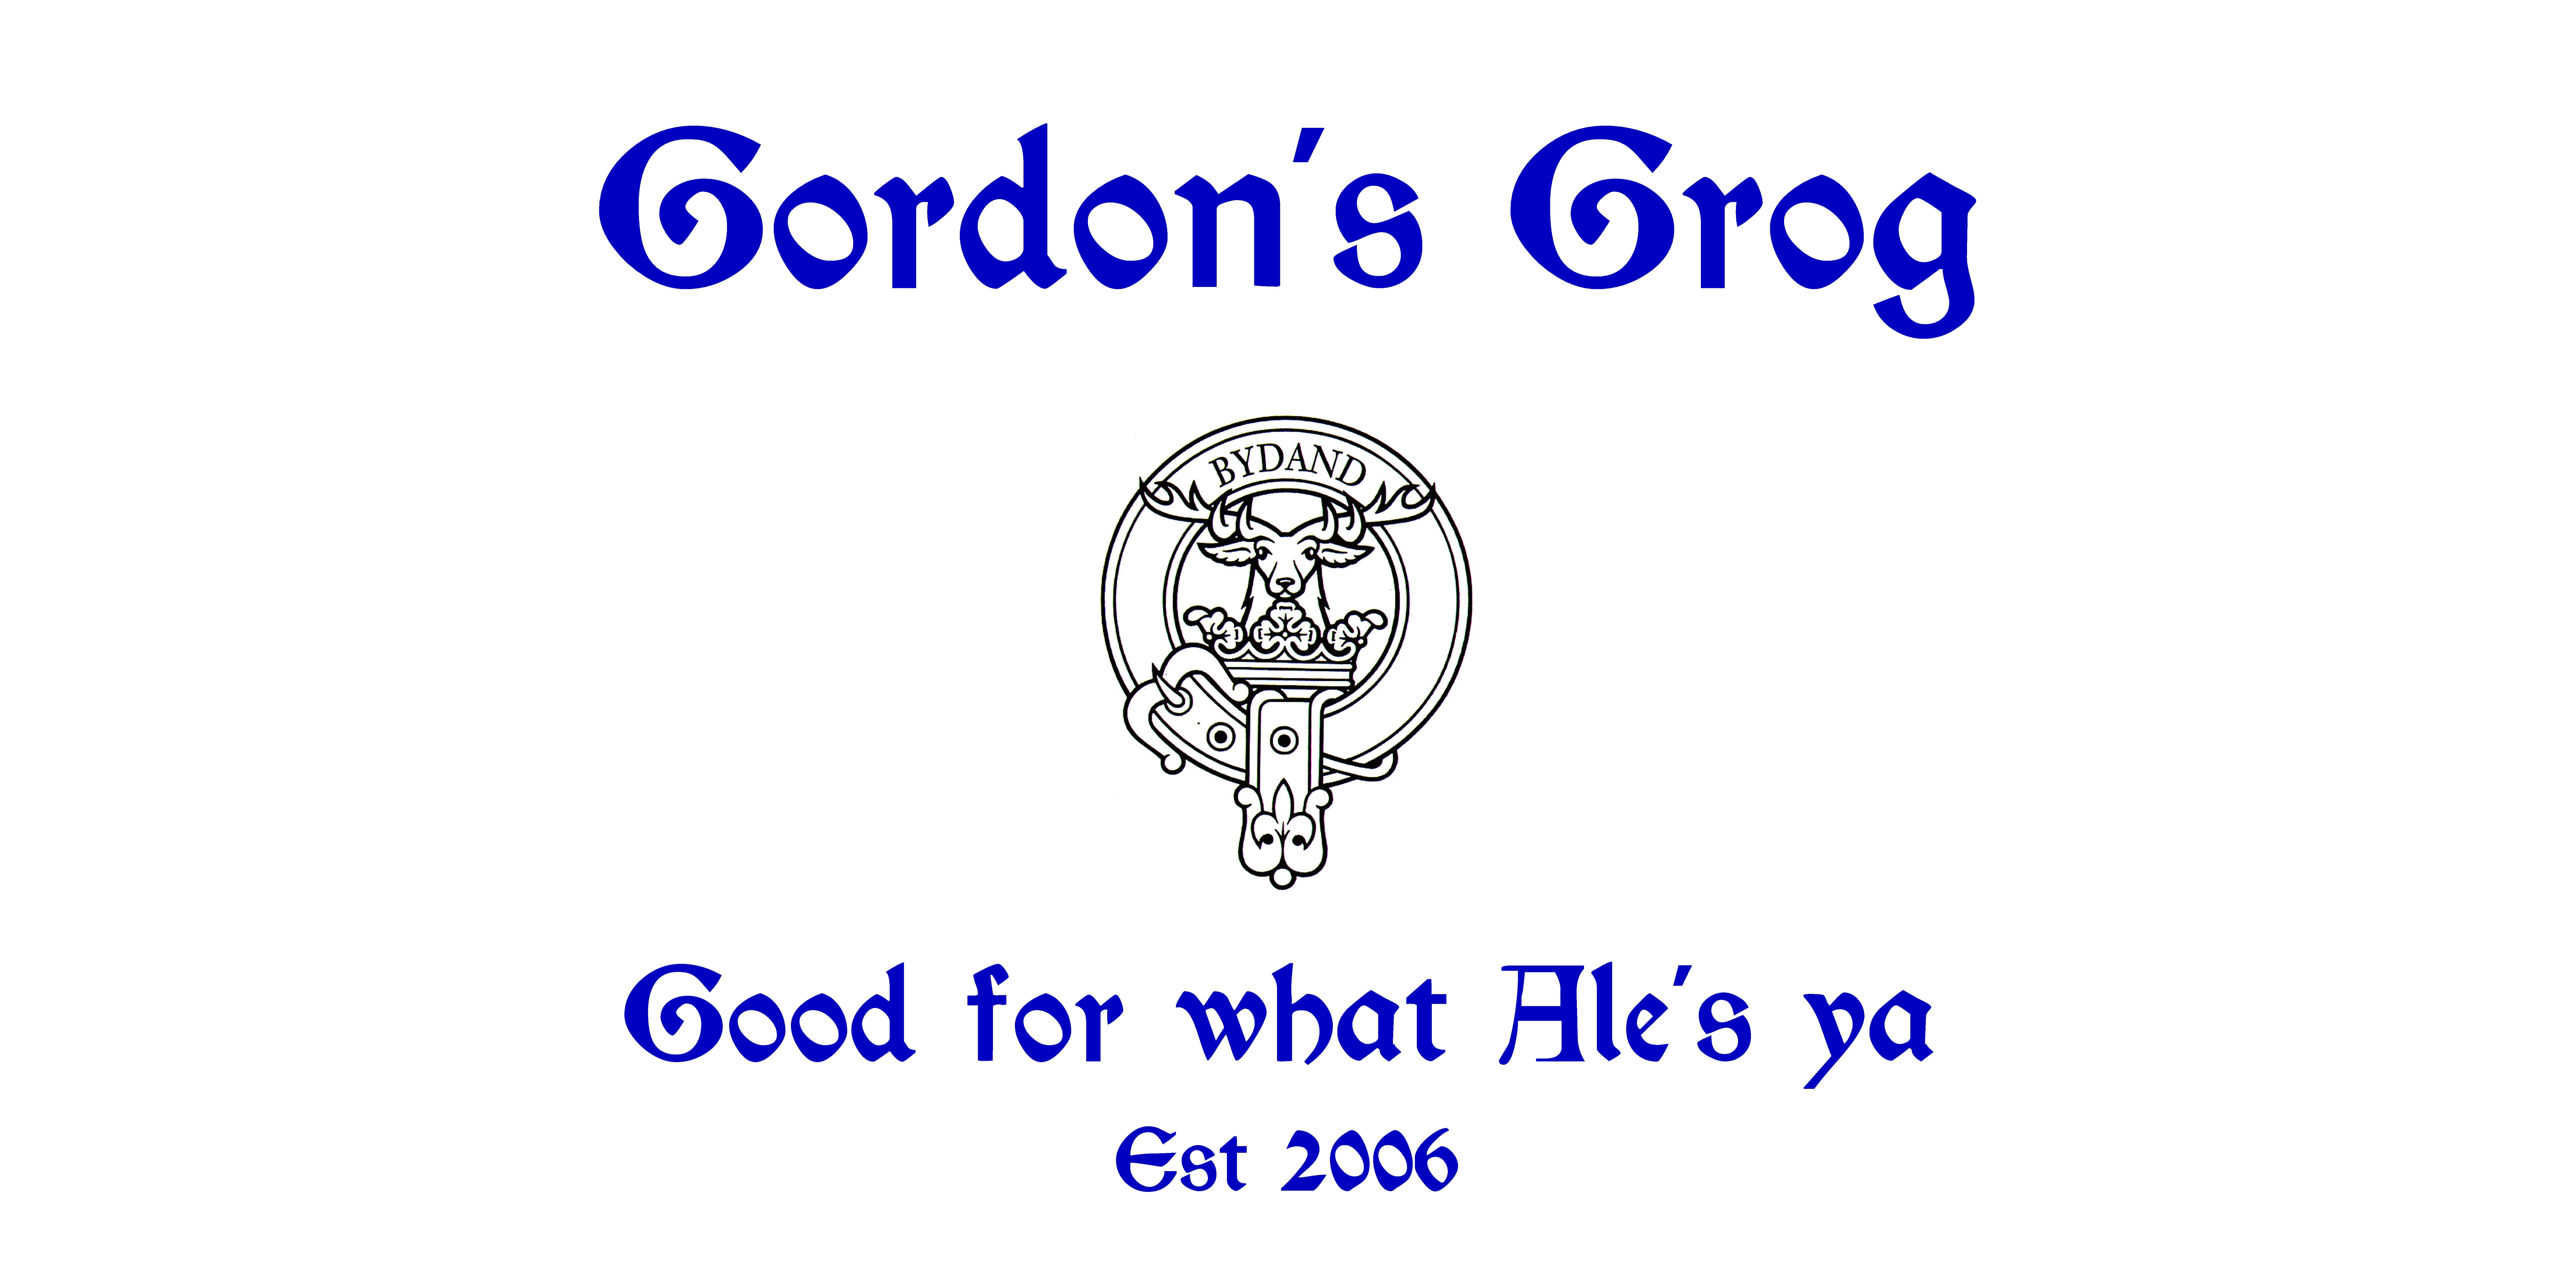 Gordon's Grog